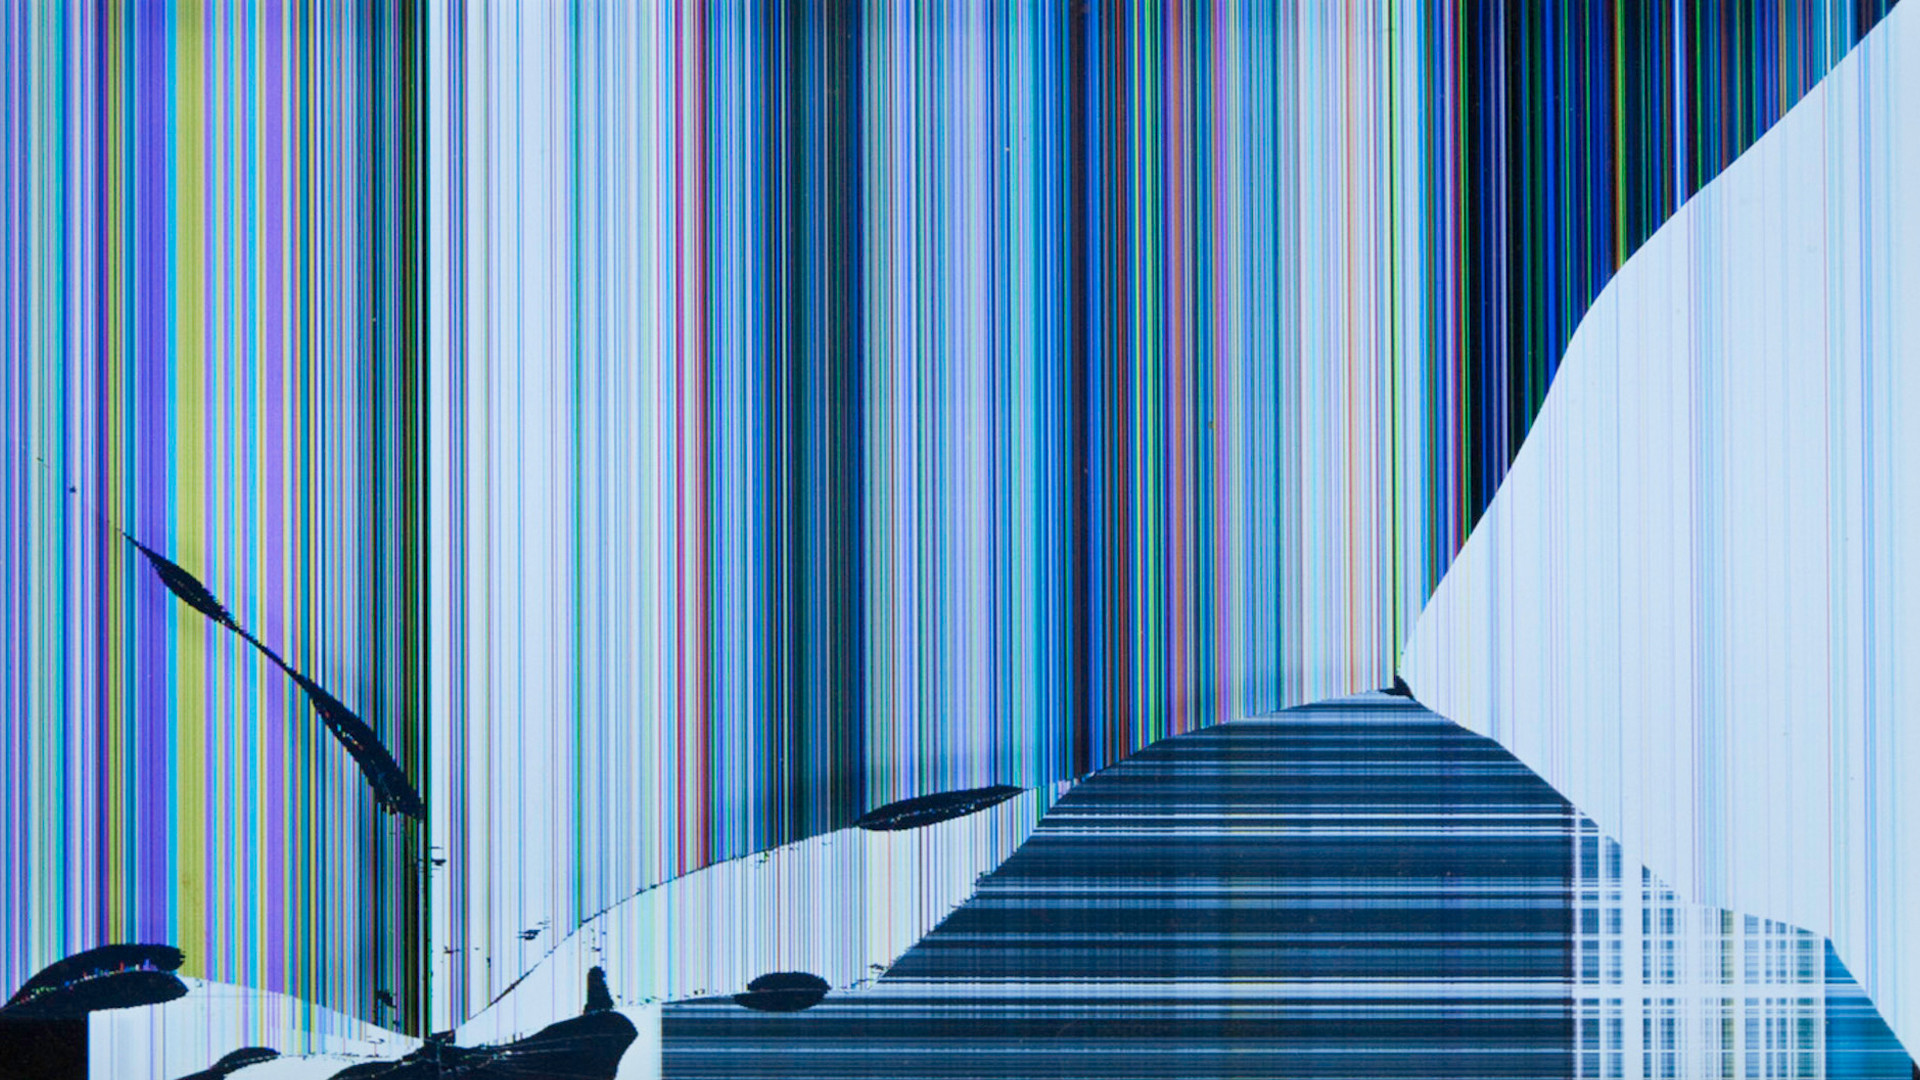 schermo rotto wallpaper hd,blu,architettura,linea,tenda,interior design